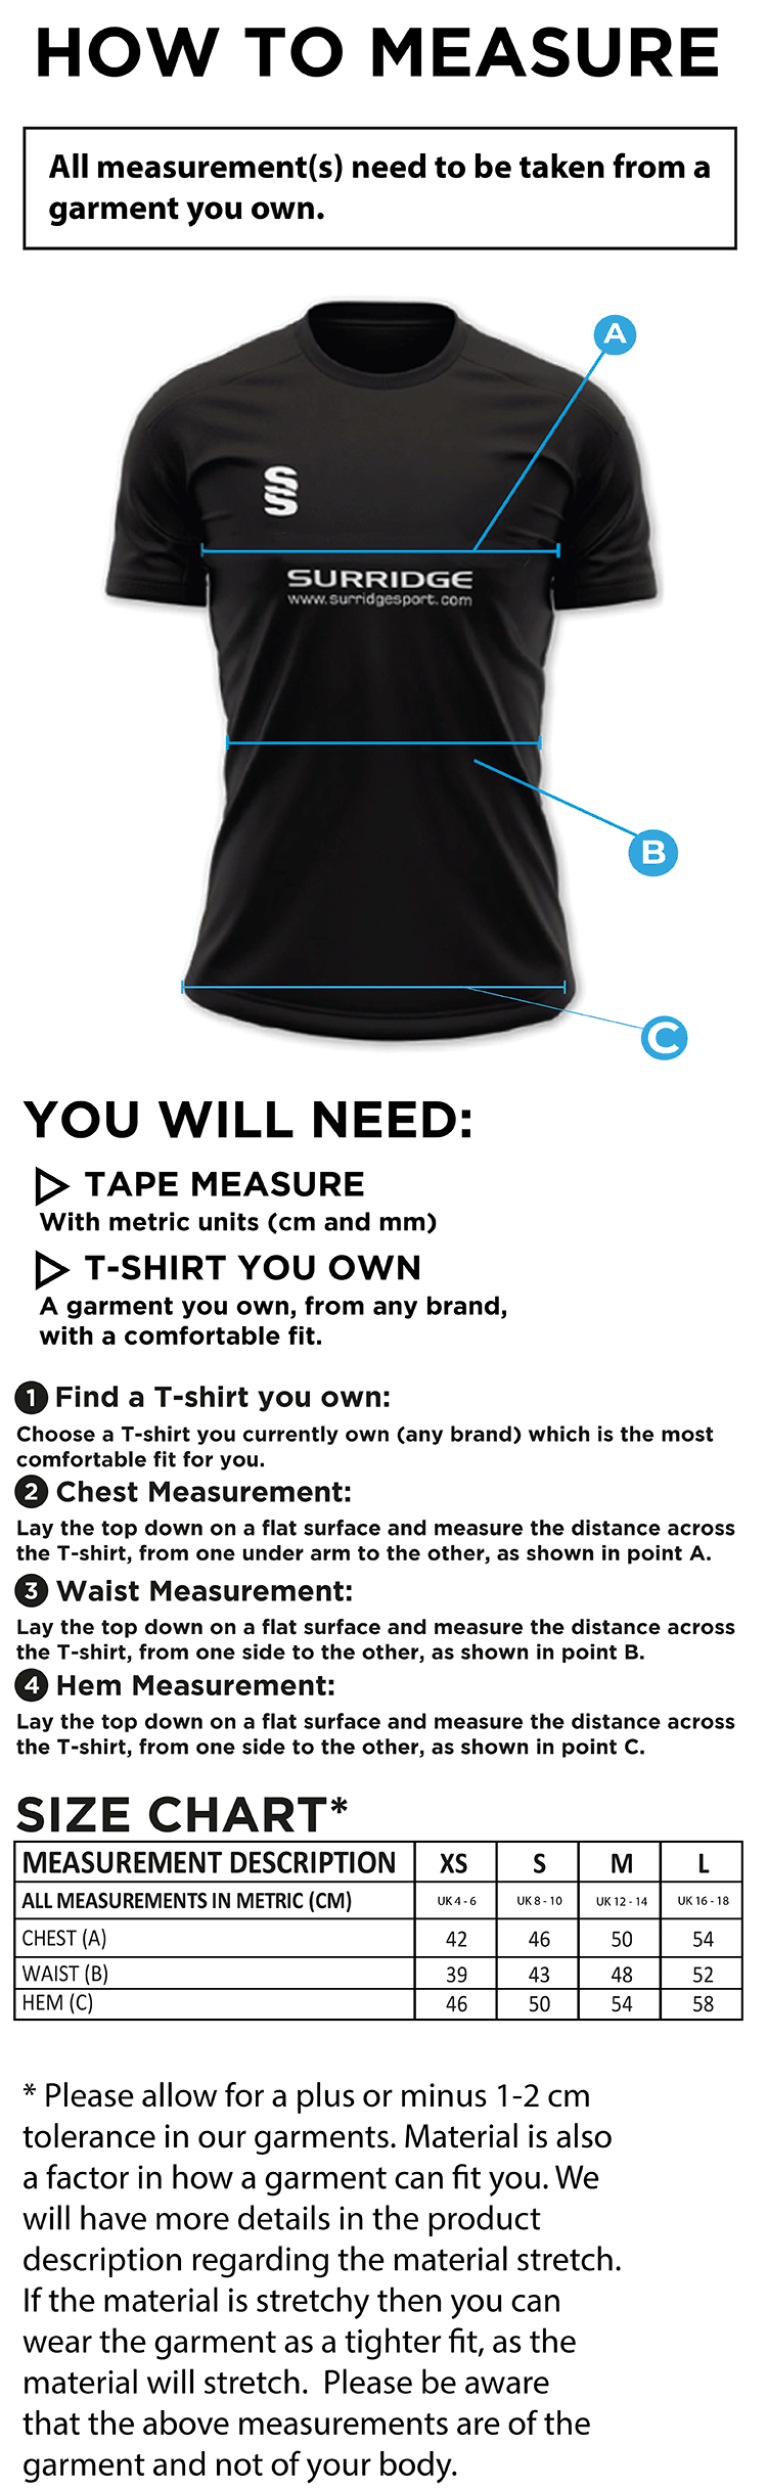 Women's Camo Polo Shirt : Black - Size Guide